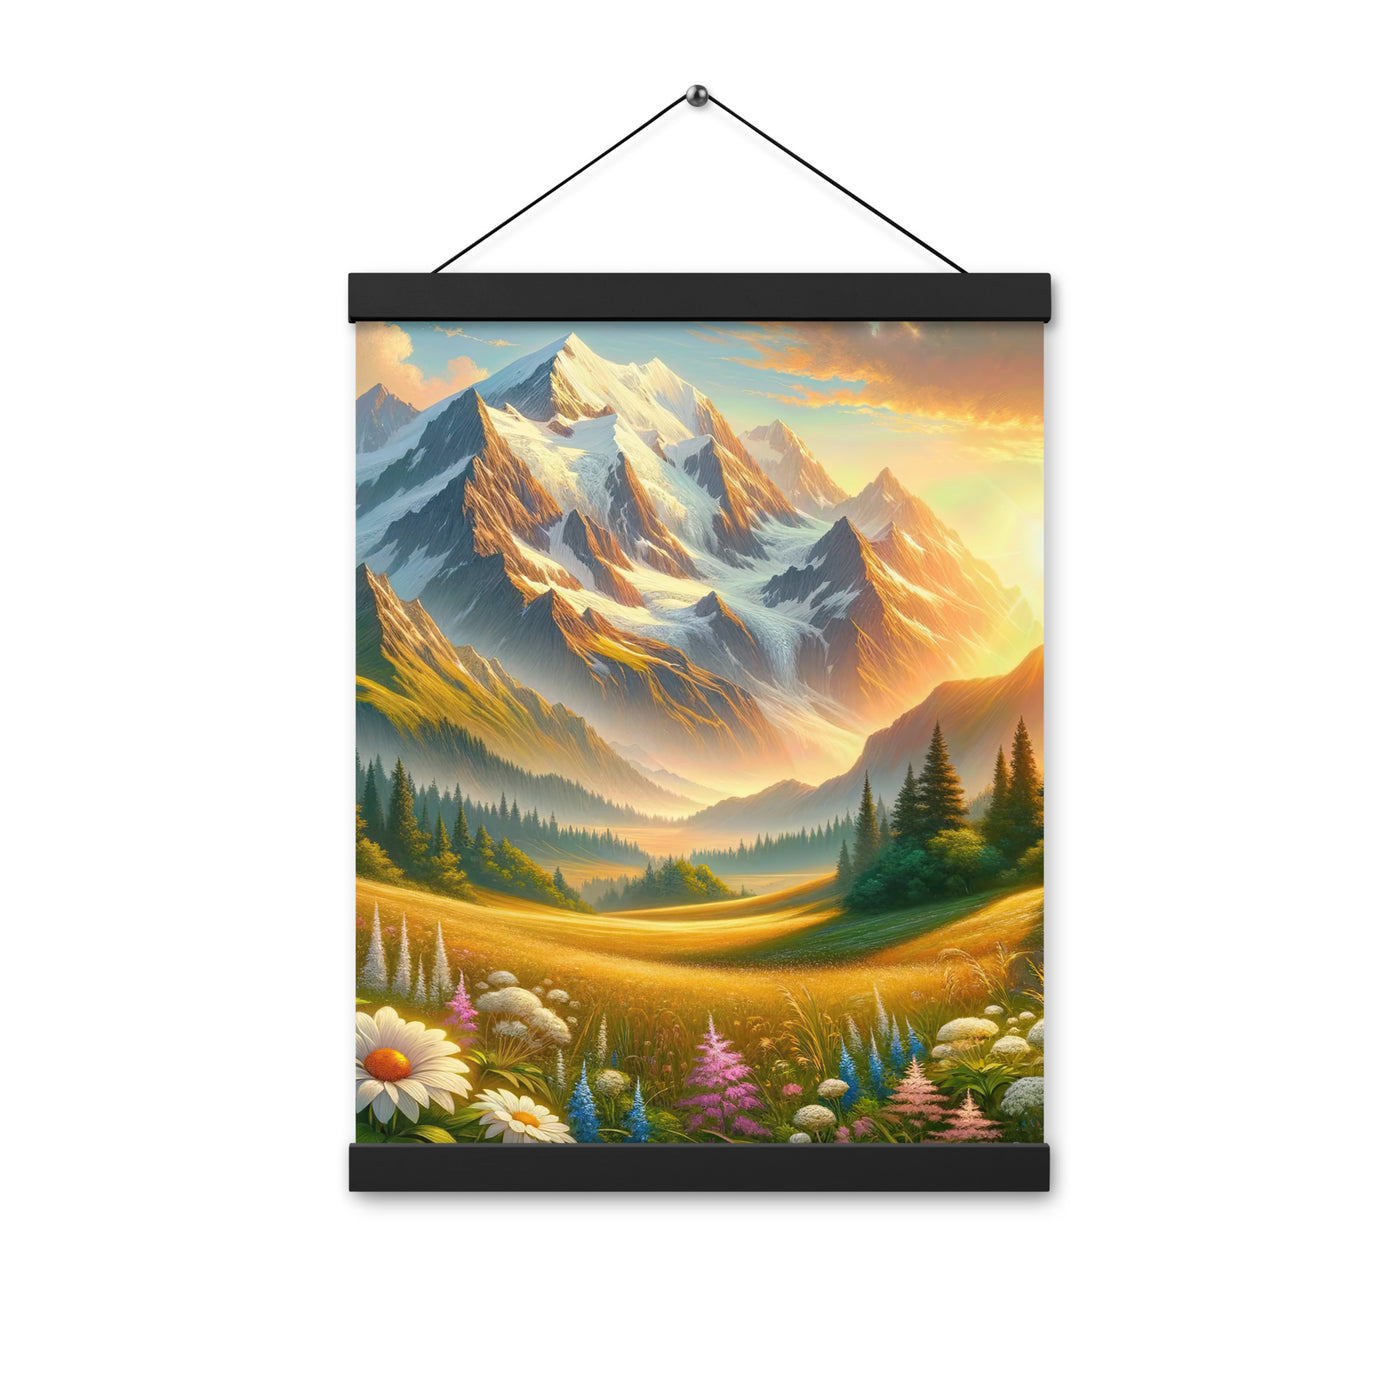 Heitere Alpenschönheit: Schneeberge und Wildblumenwiesen - Premium Poster mit Aufhängung berge xxx yyy zzz 30.5 x 40.6 cm